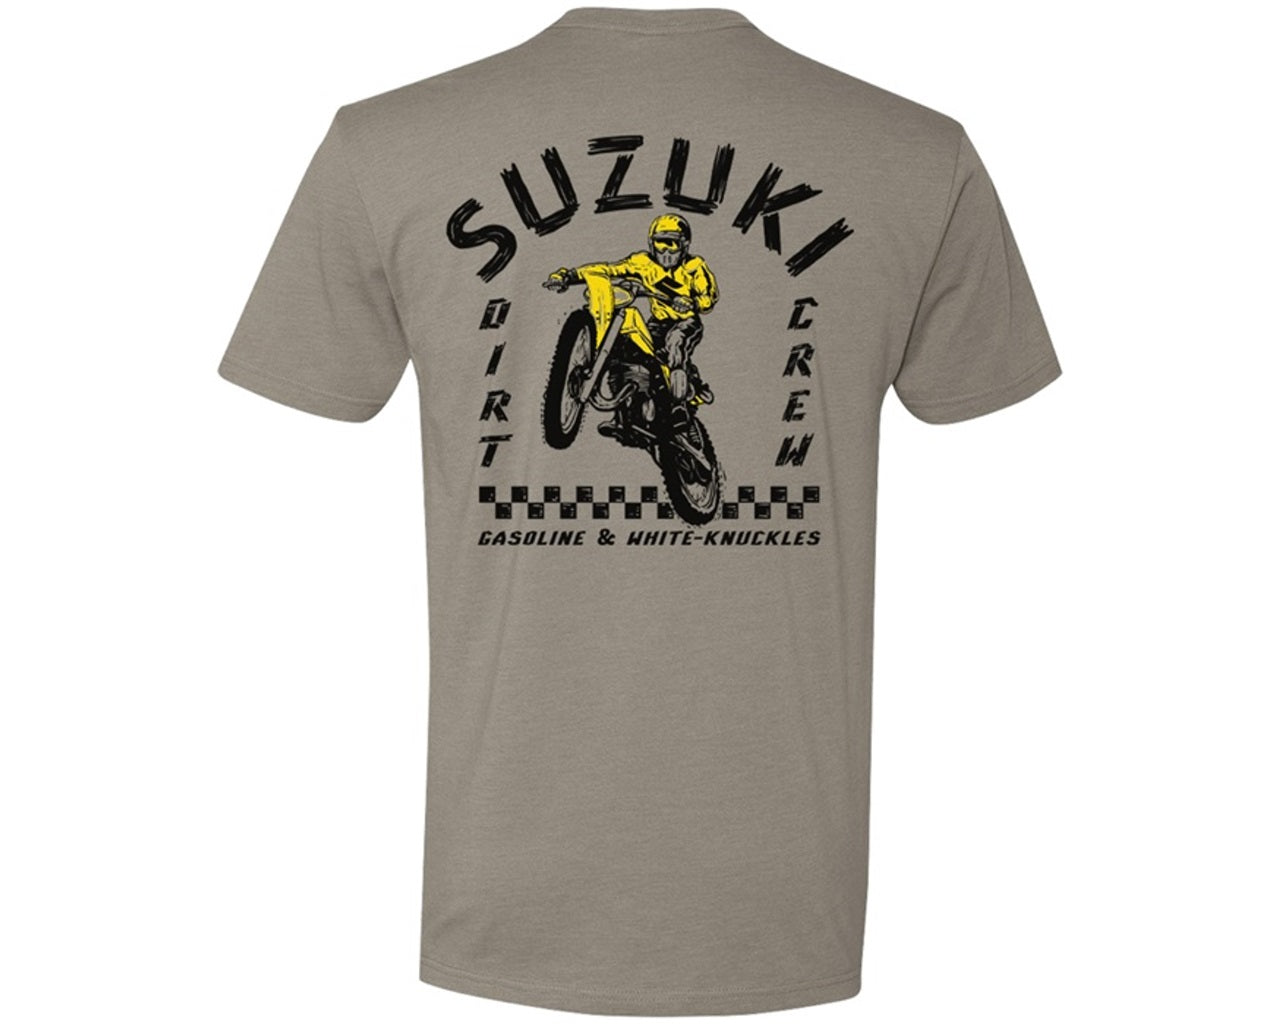 Suzuki Gasoline & White Knuckles T-Shirt Brown 